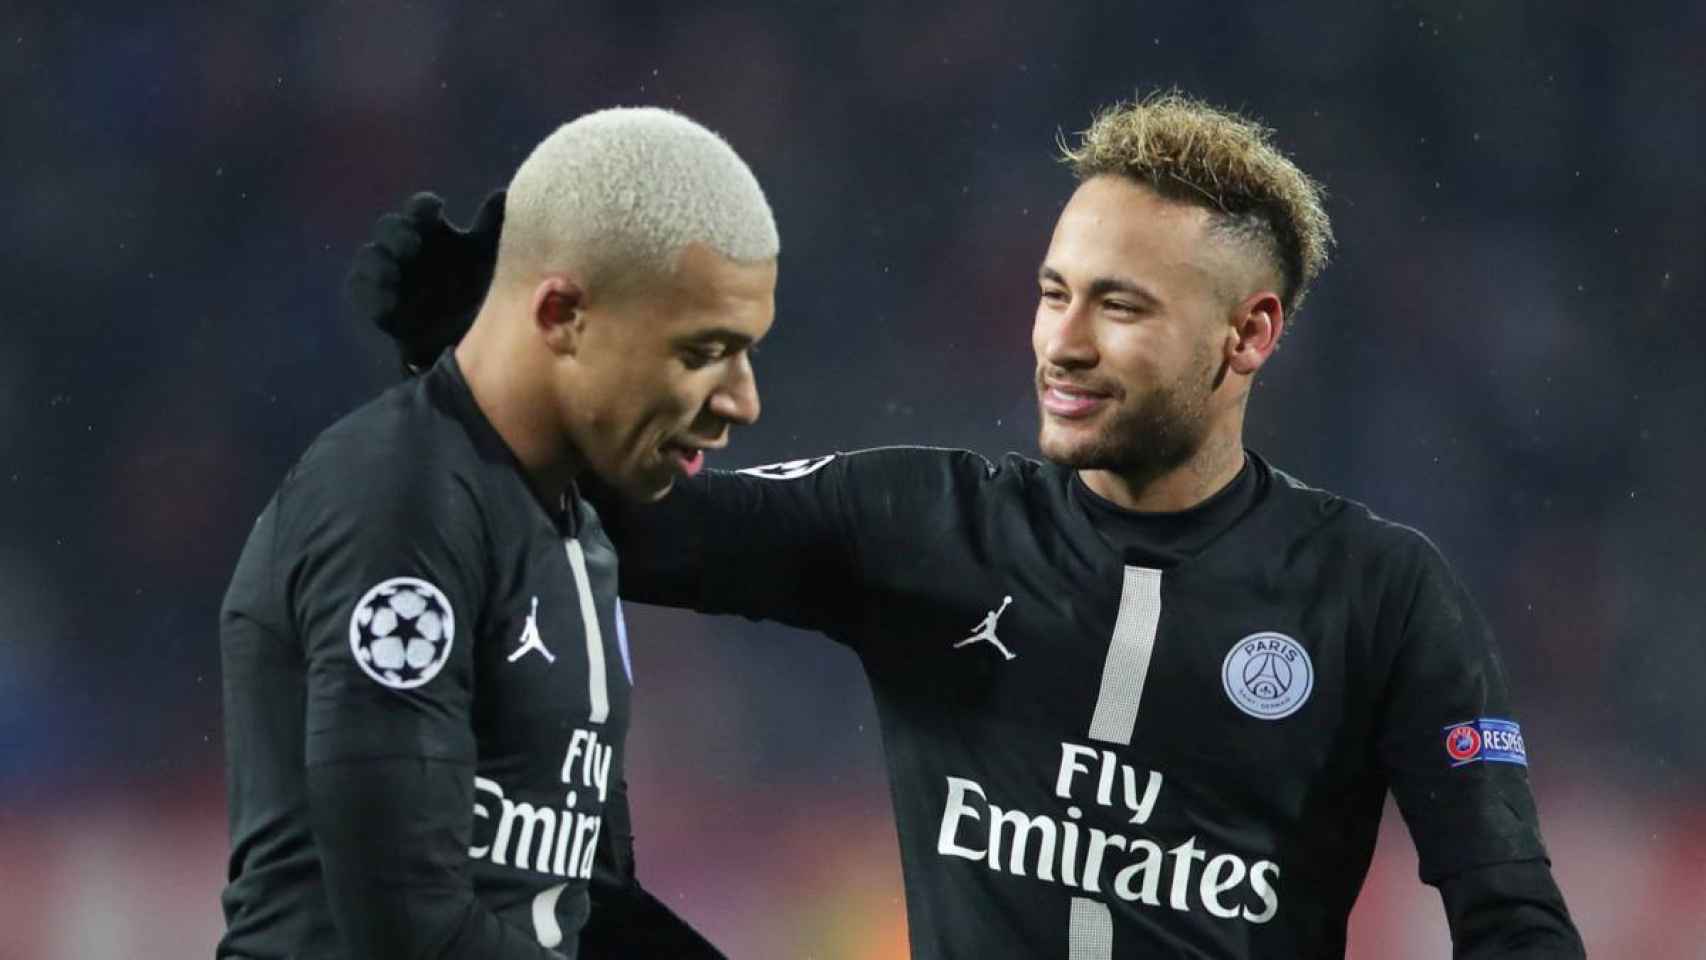 Mbappé y Neymar en un partido de la Champions League con el PSG / EFE